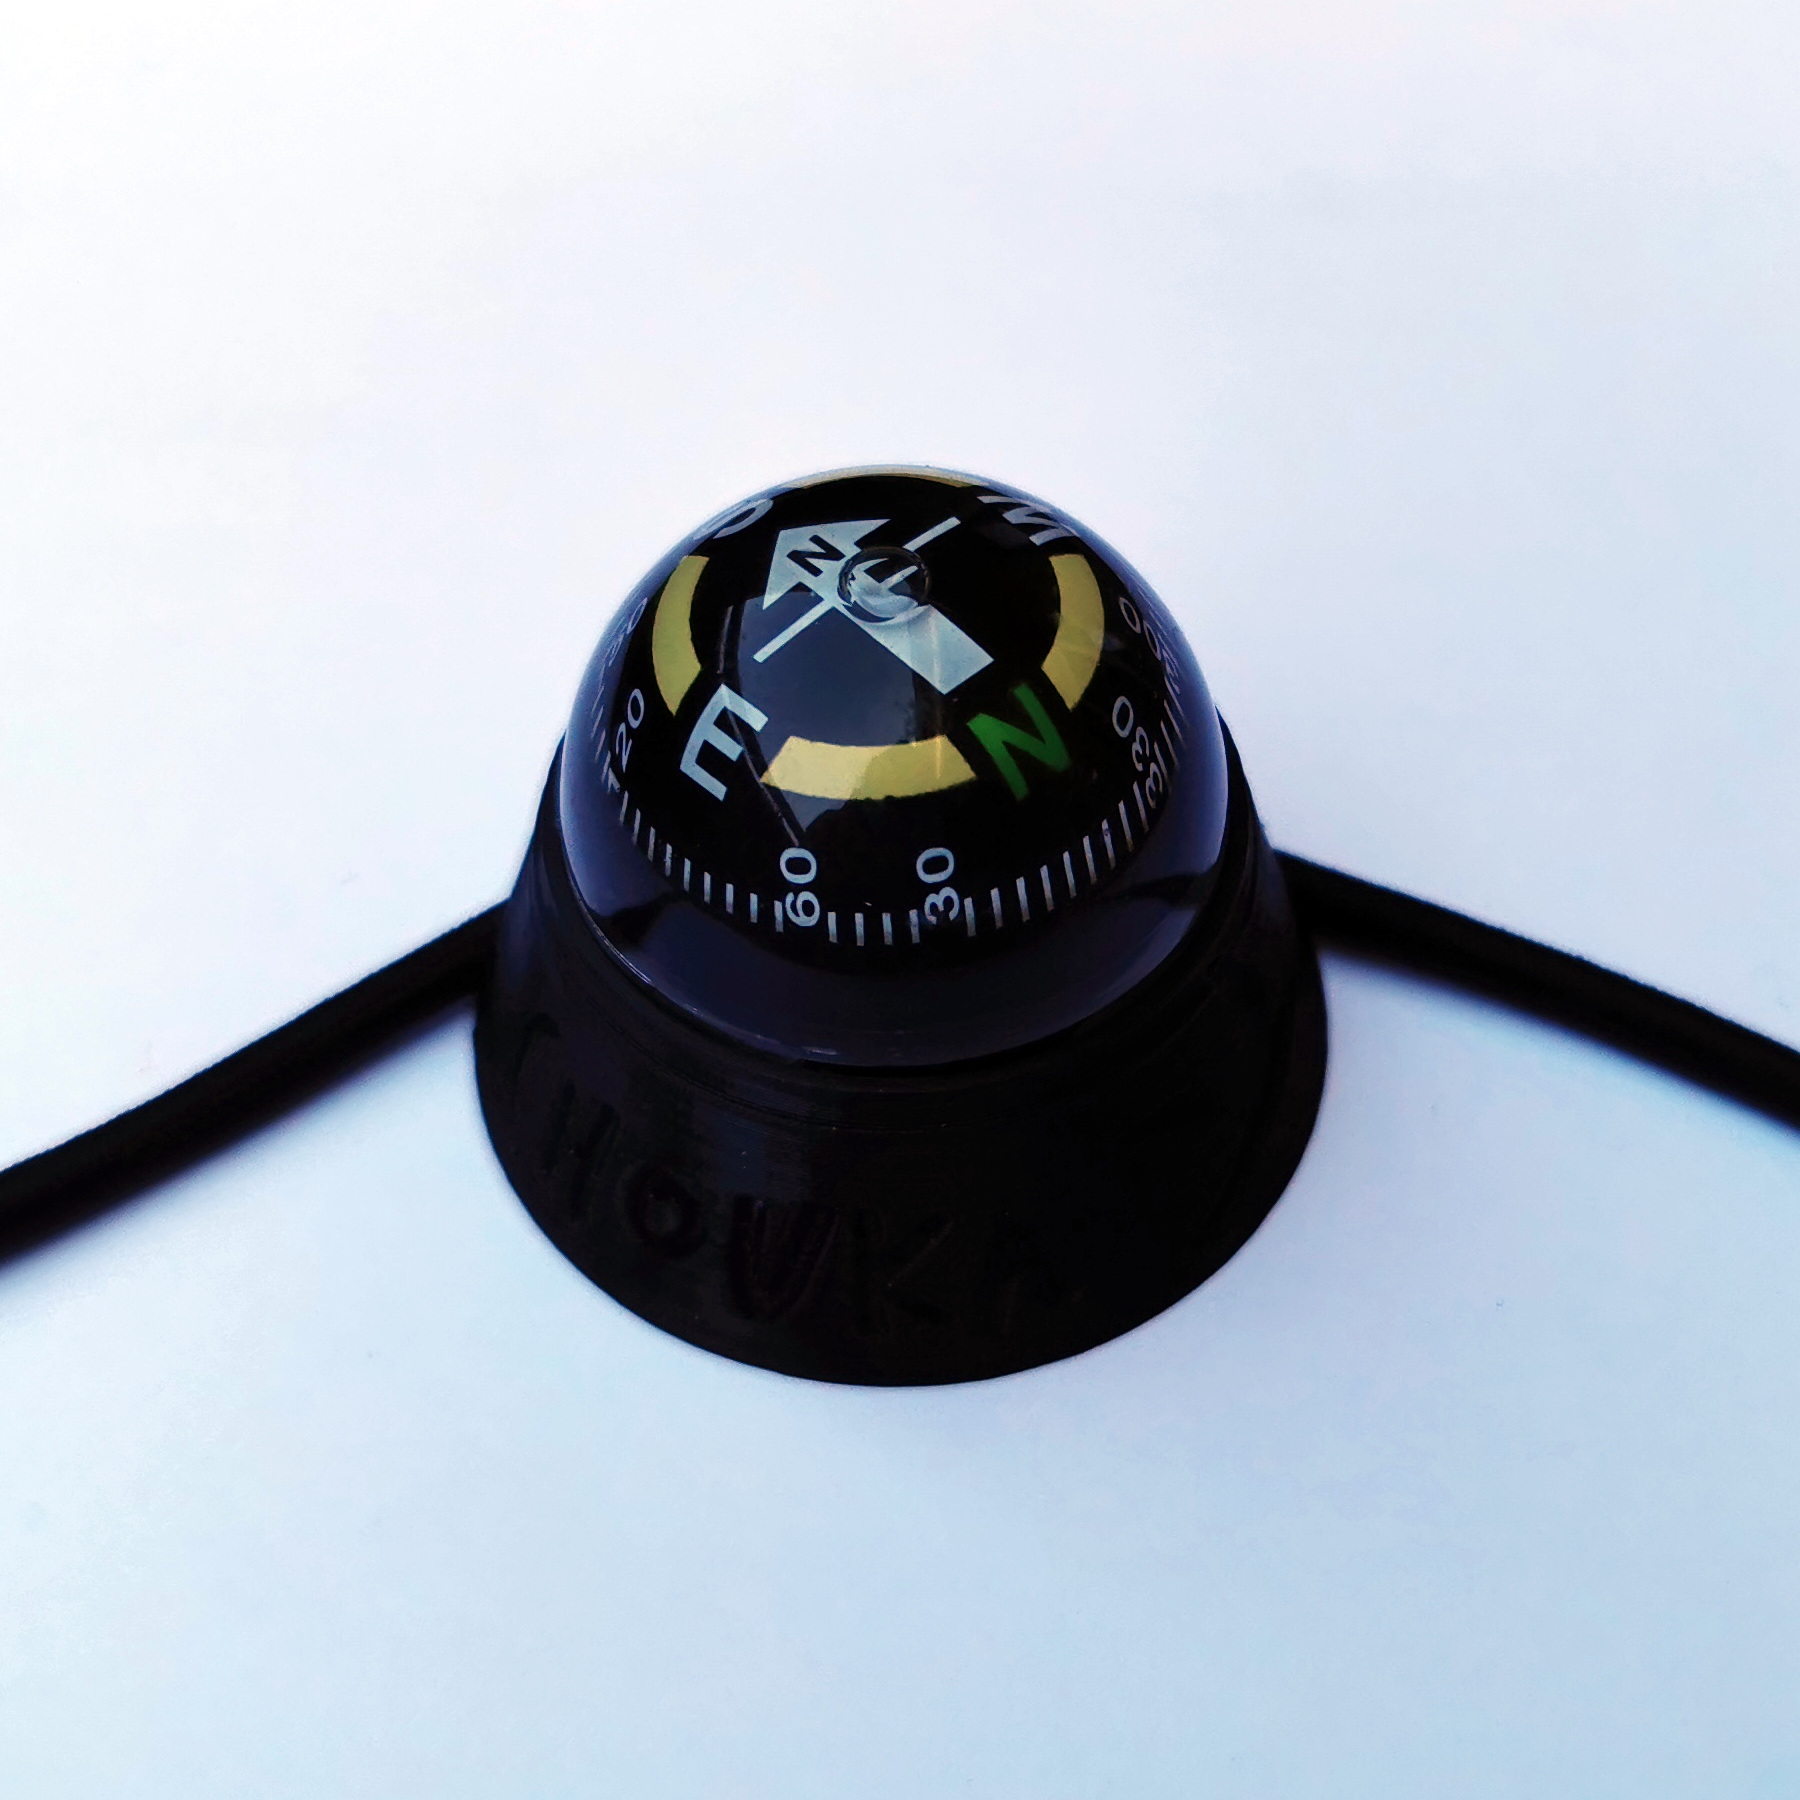 Gleitschirmkompass - Kompass - Das CHOUKA, ultraleichte Variometer